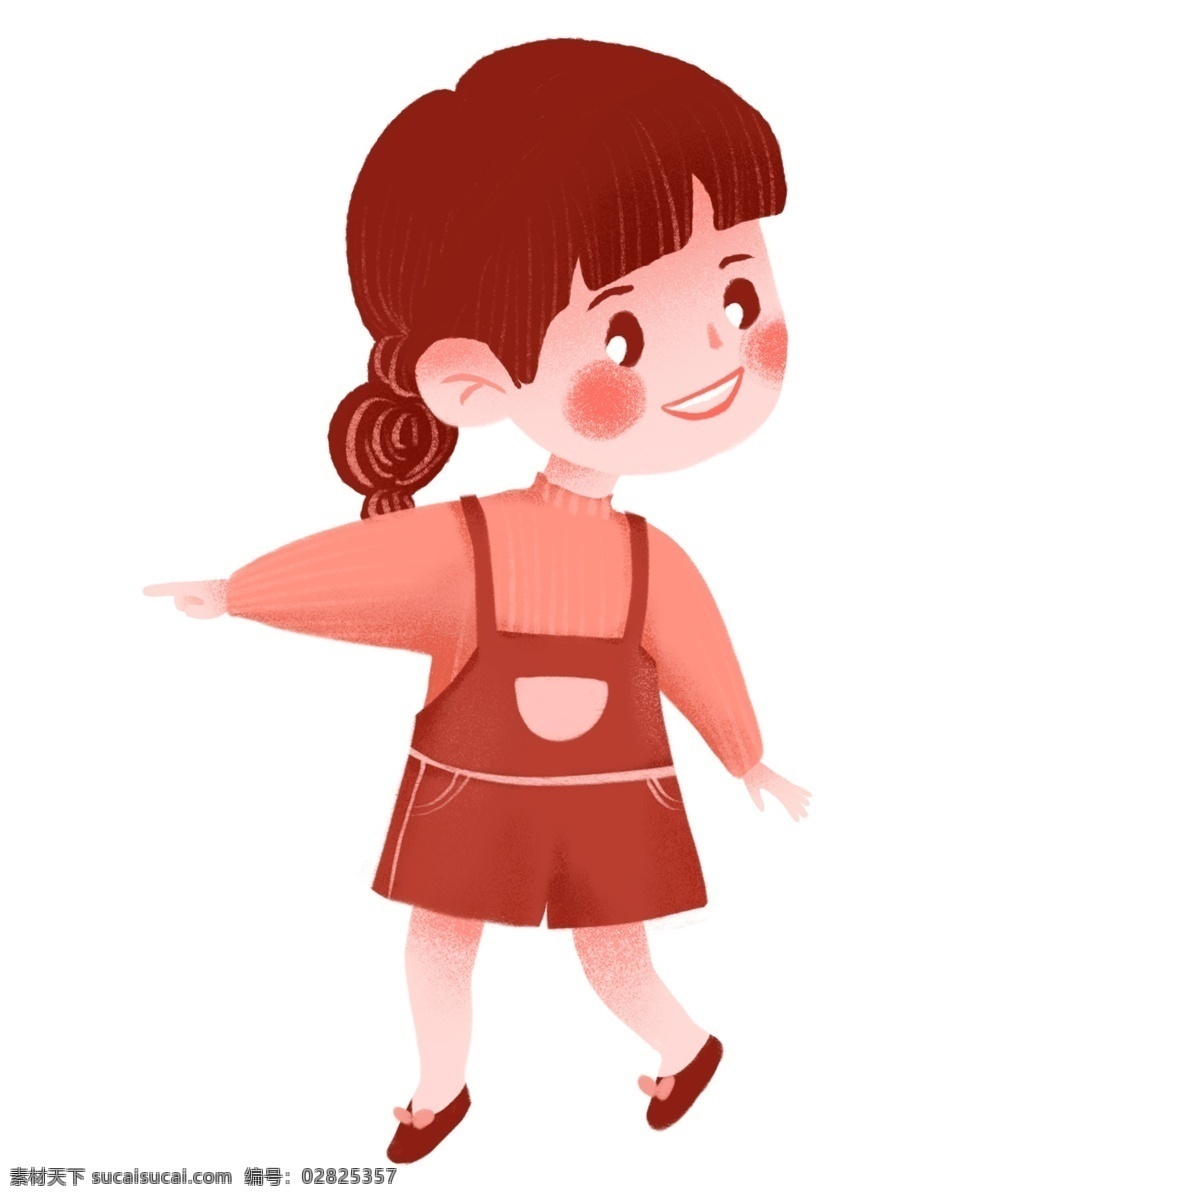 手绘 简约 可爱 女孩 原创 元素 幼儿园 卡通 设计元素 背带裙 女娃娃 原创元素